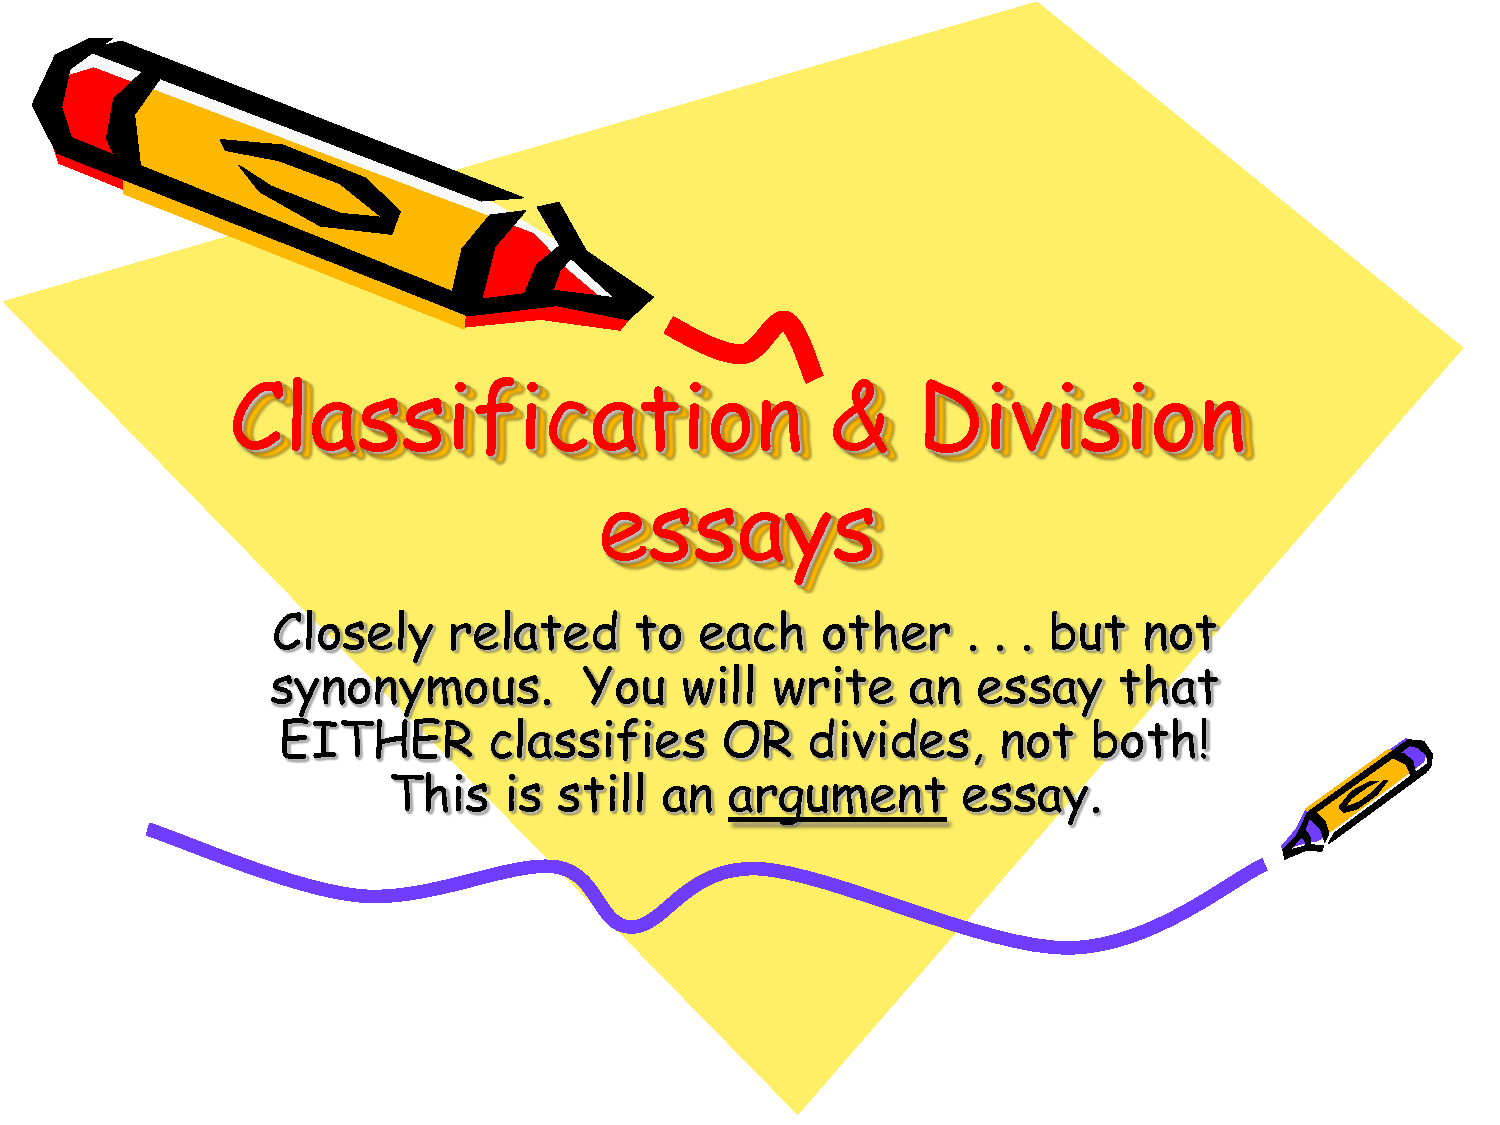 Classifications essay